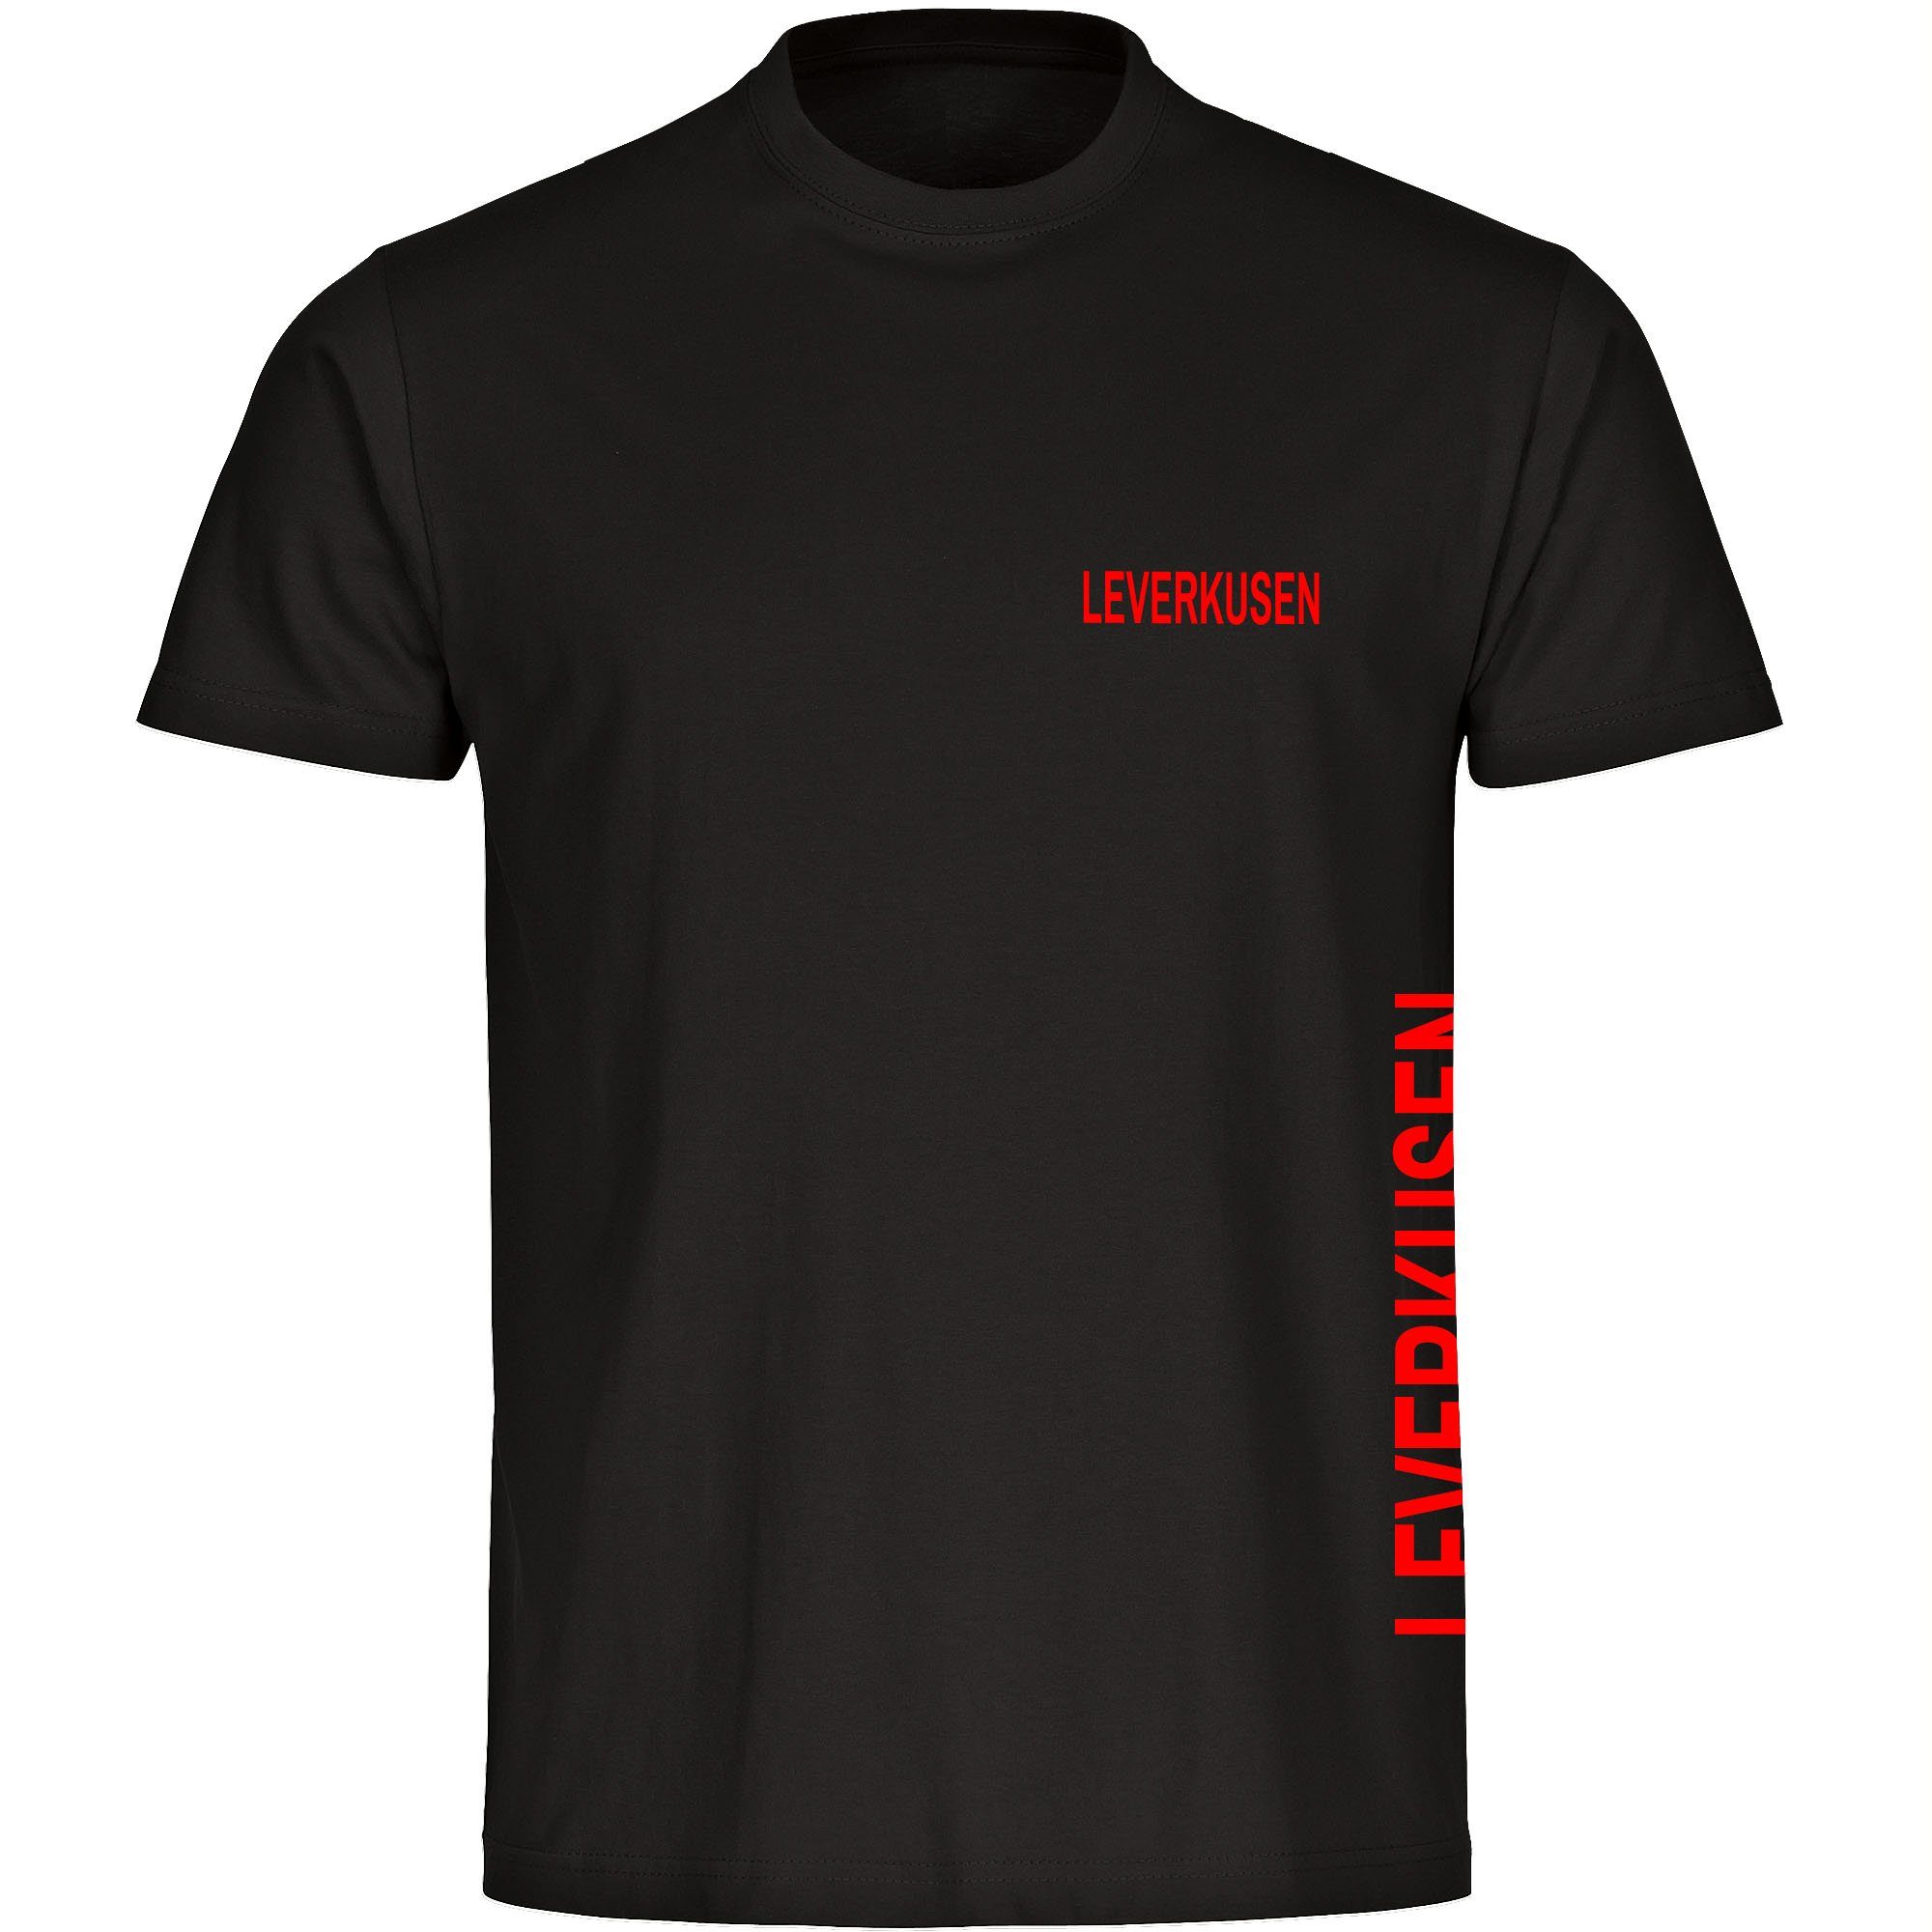 multifanshop T-Shirt Herren Leverkusen - Brust & Seite - Männer